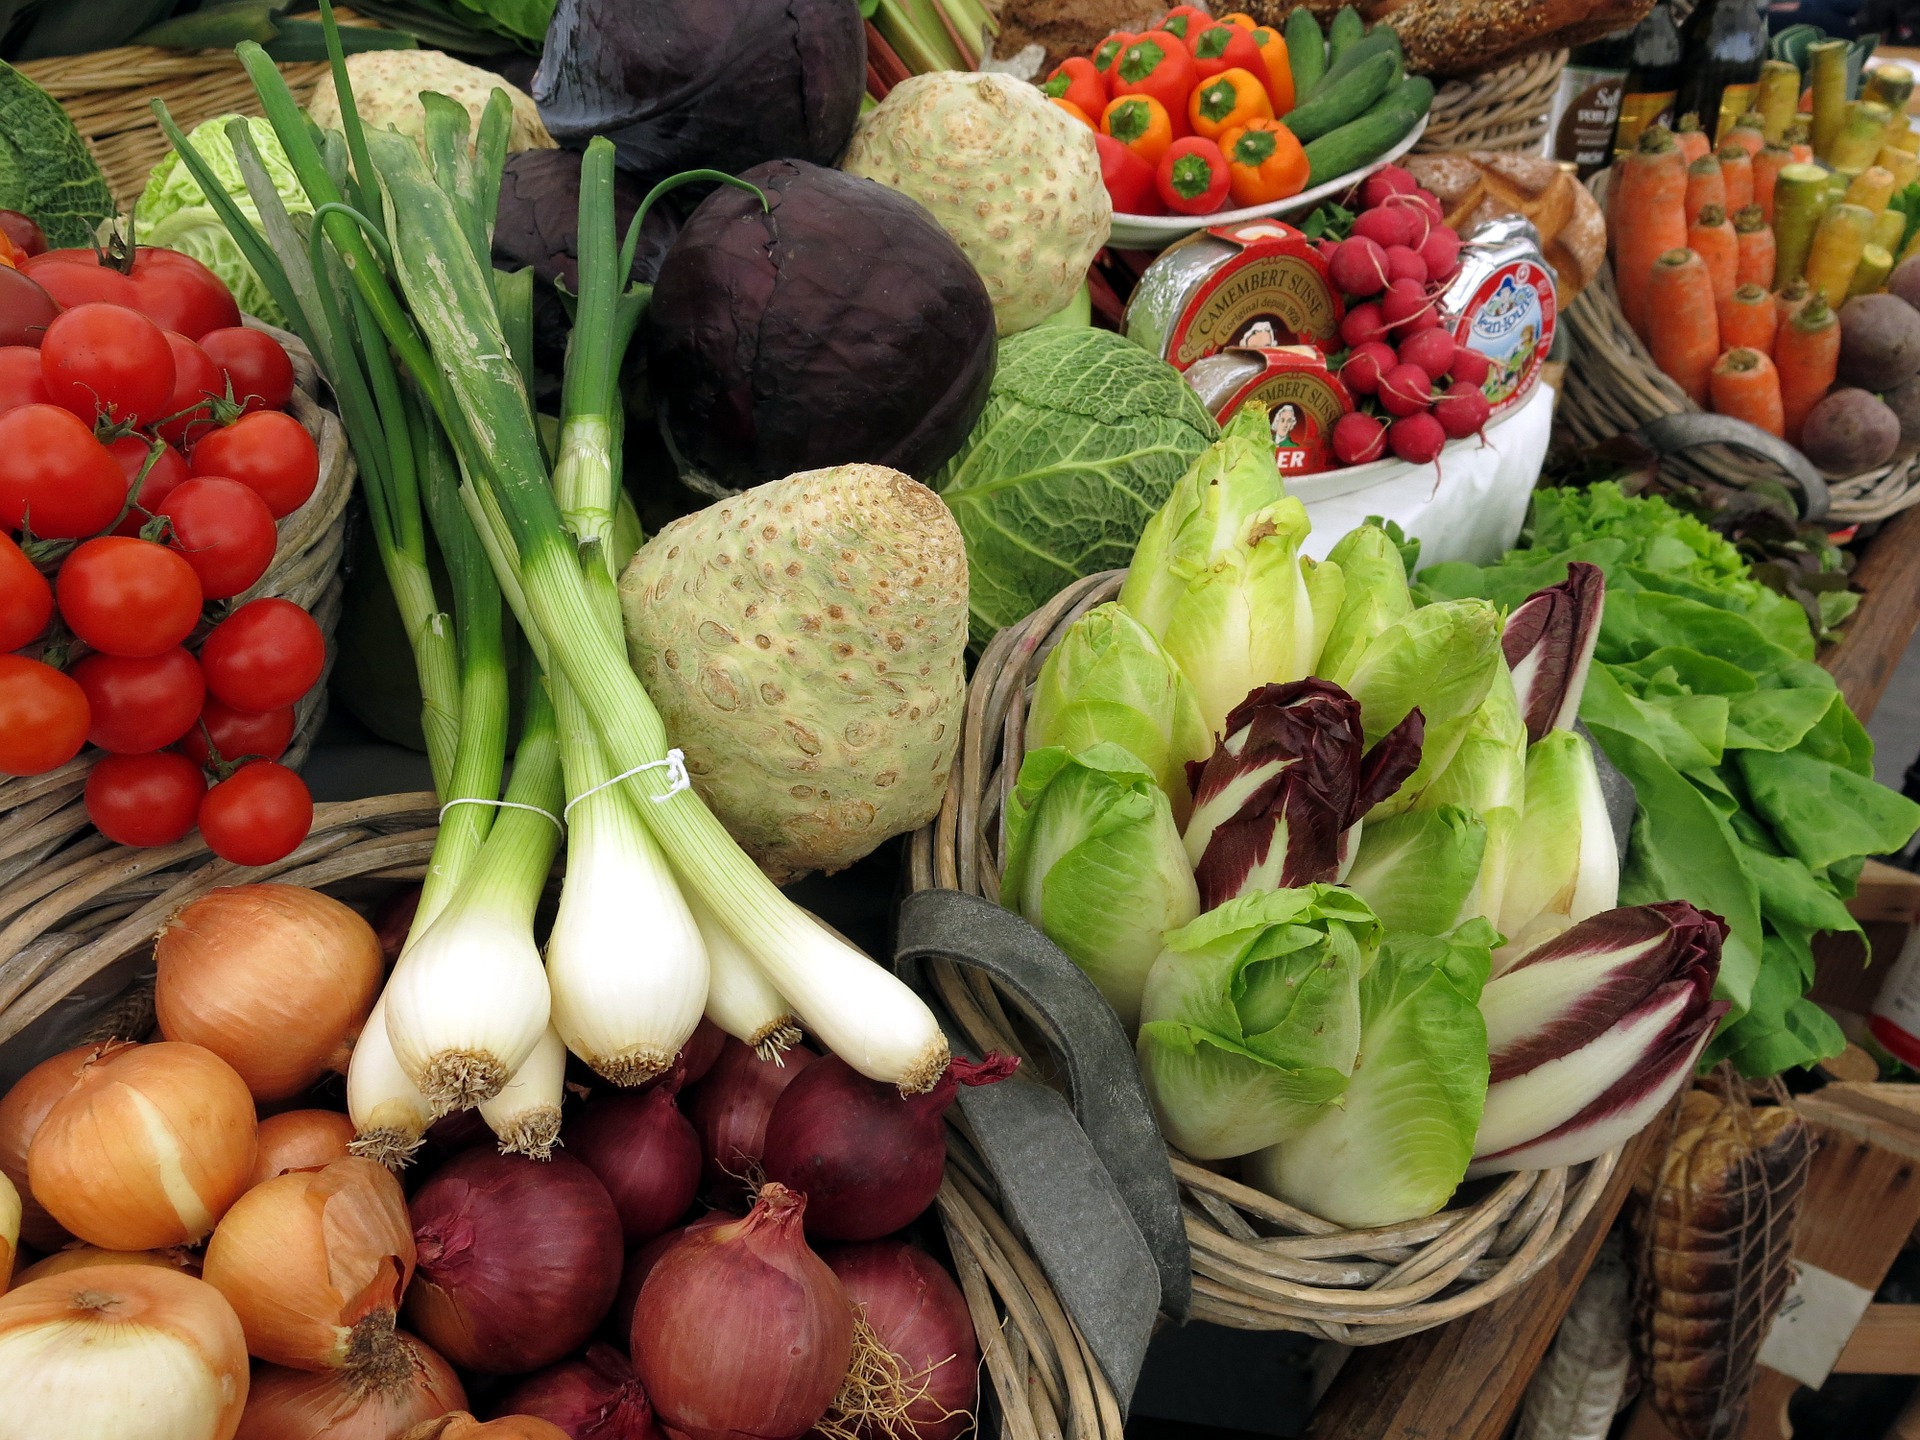 食物繊維が多く含まれている野菜